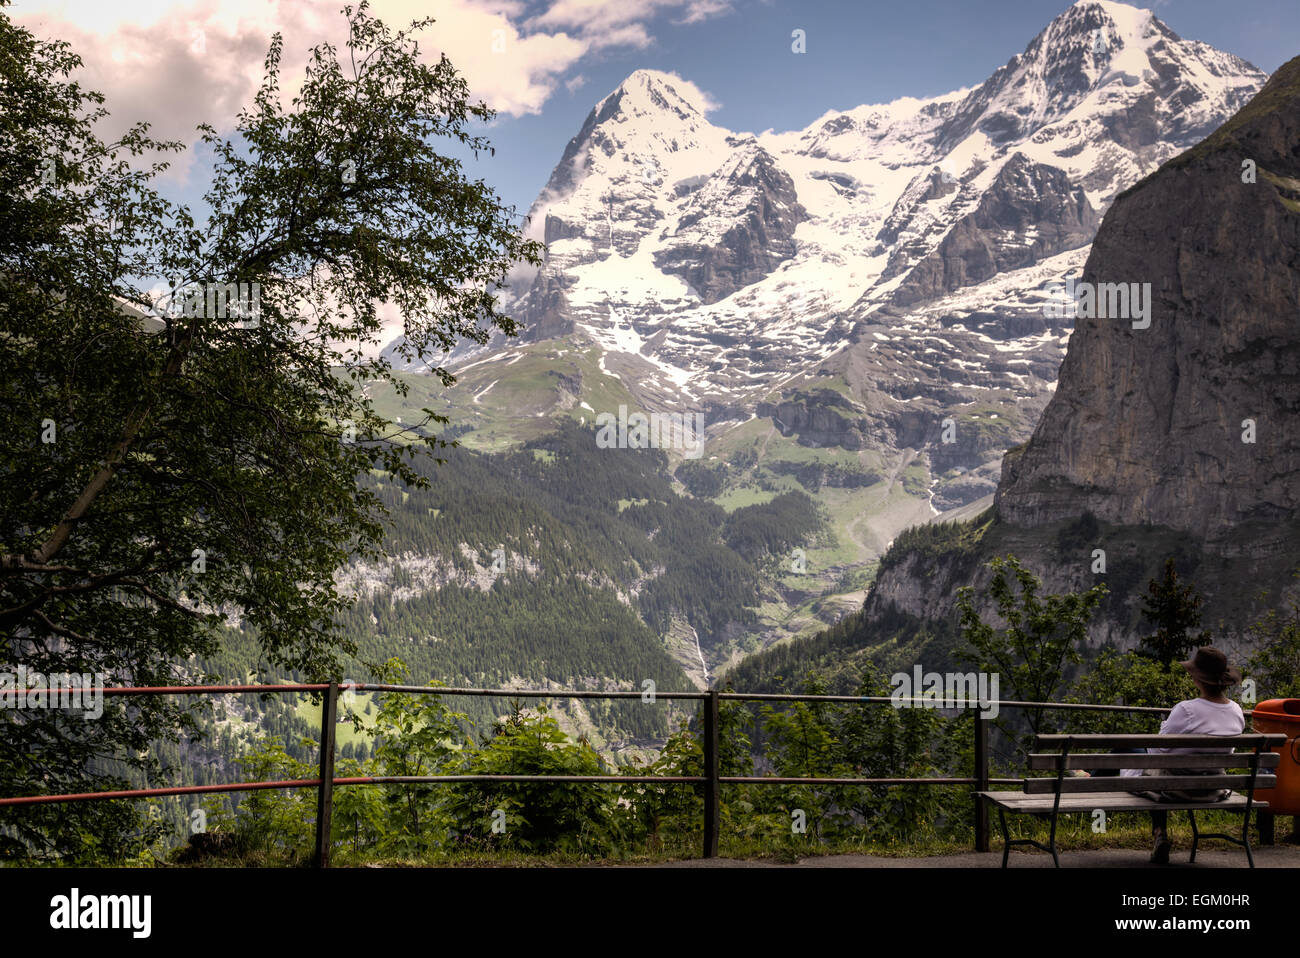 Eine Frau Wanderer sitzt und reflektiert die Schönheit der umliegenden Berge, Tal und Wälder der Schweizer Alpen. Stockfoto